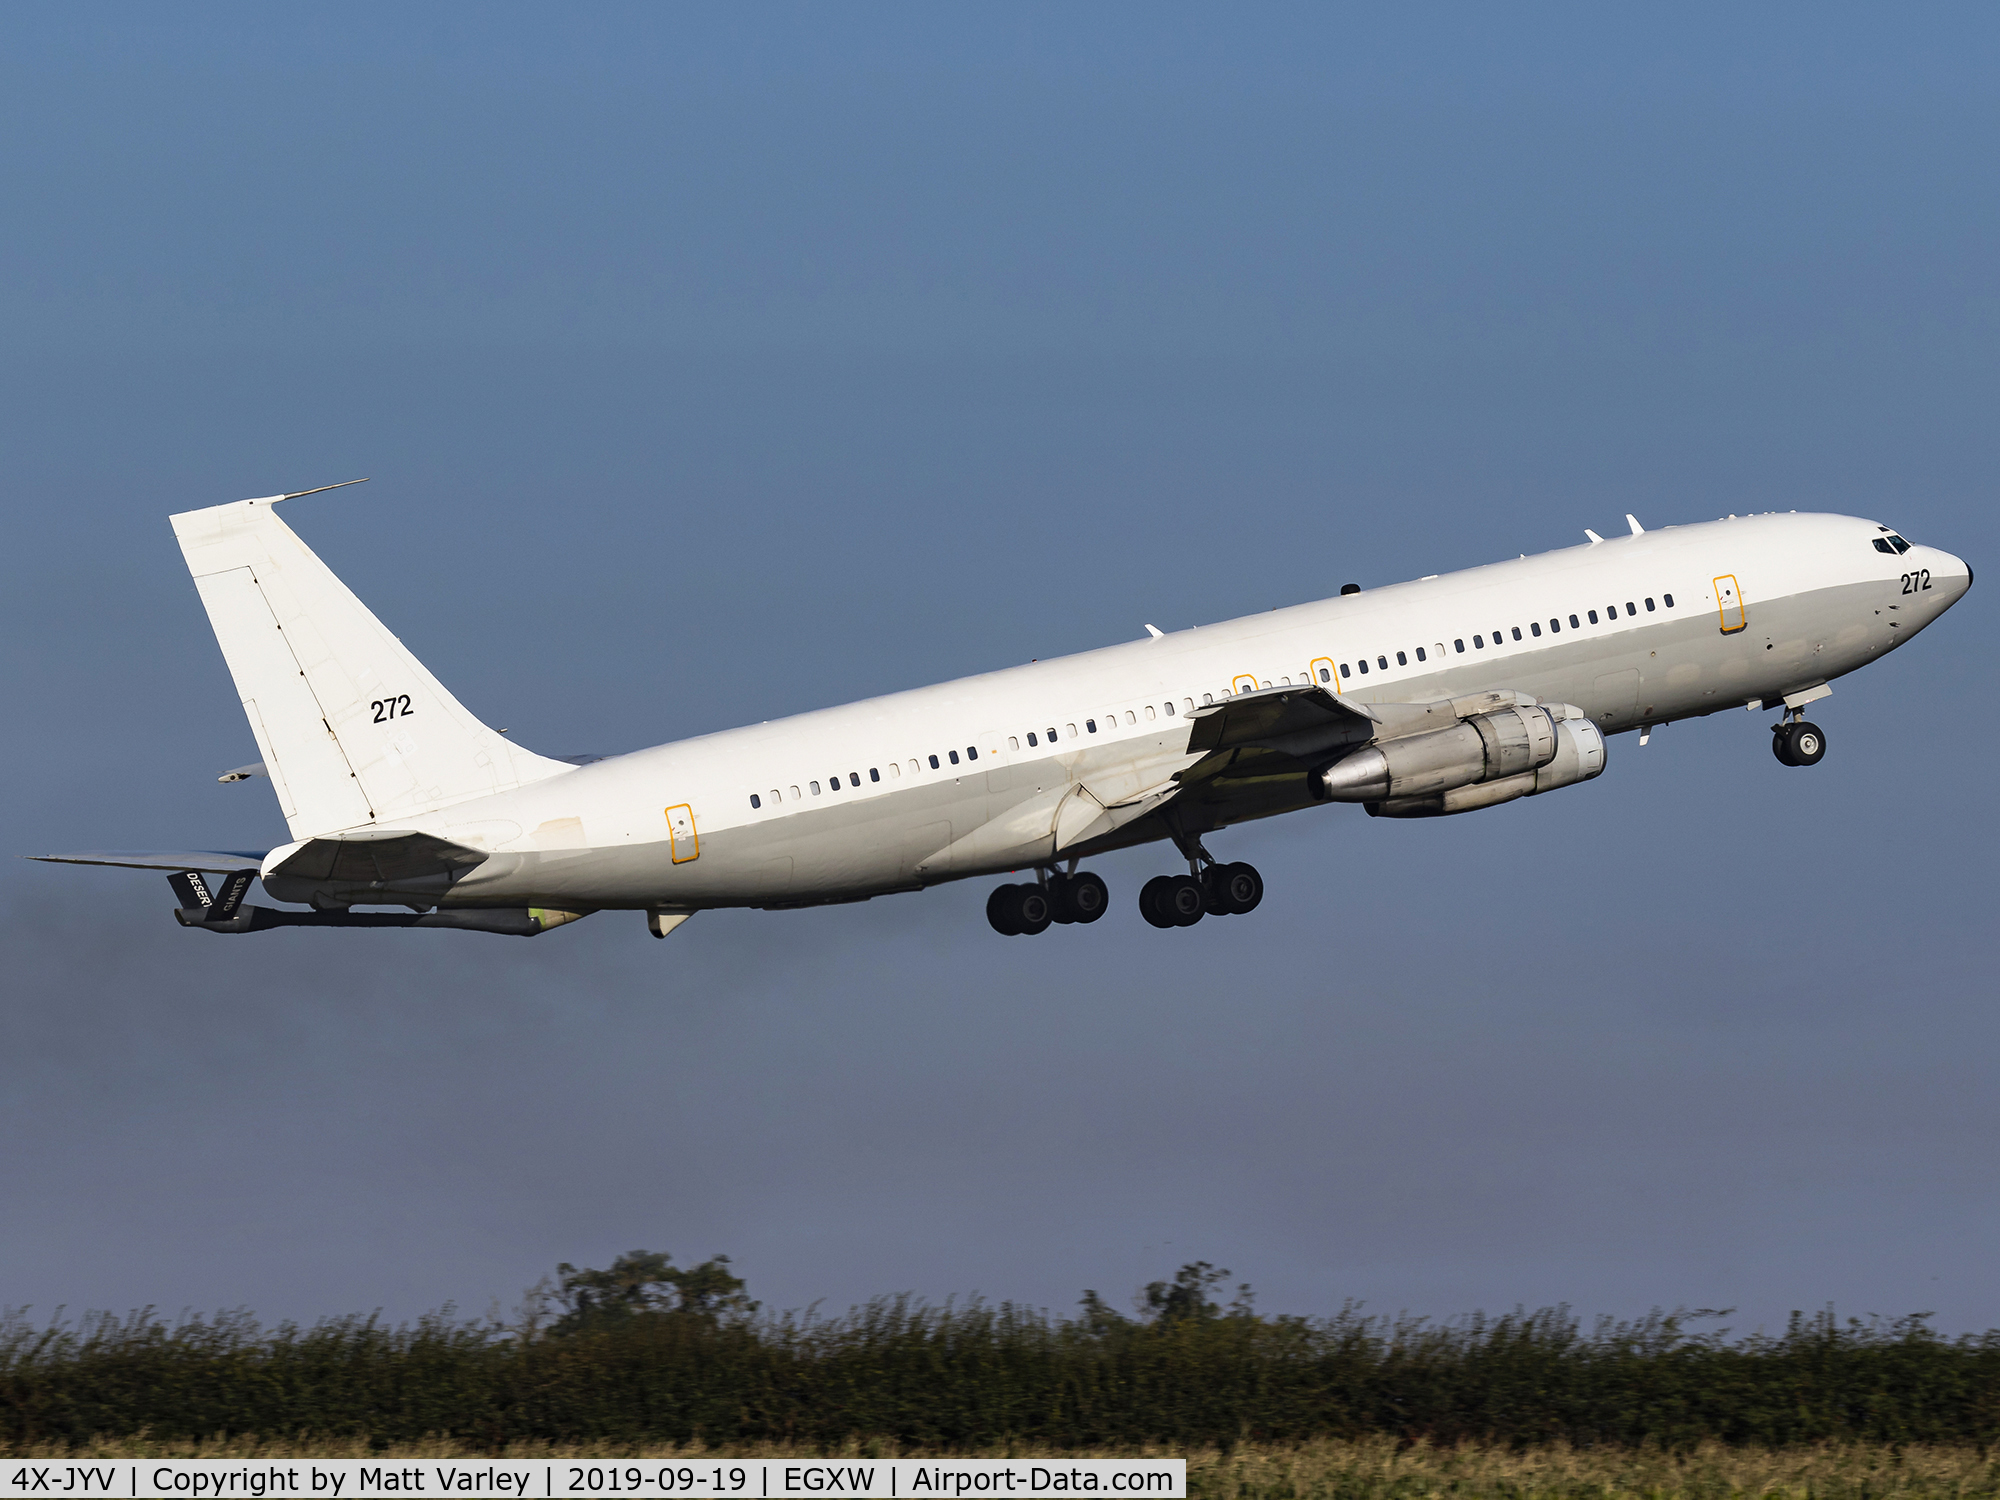 272, 1975 Boeing 707-3L6C C/N 21096, Departing